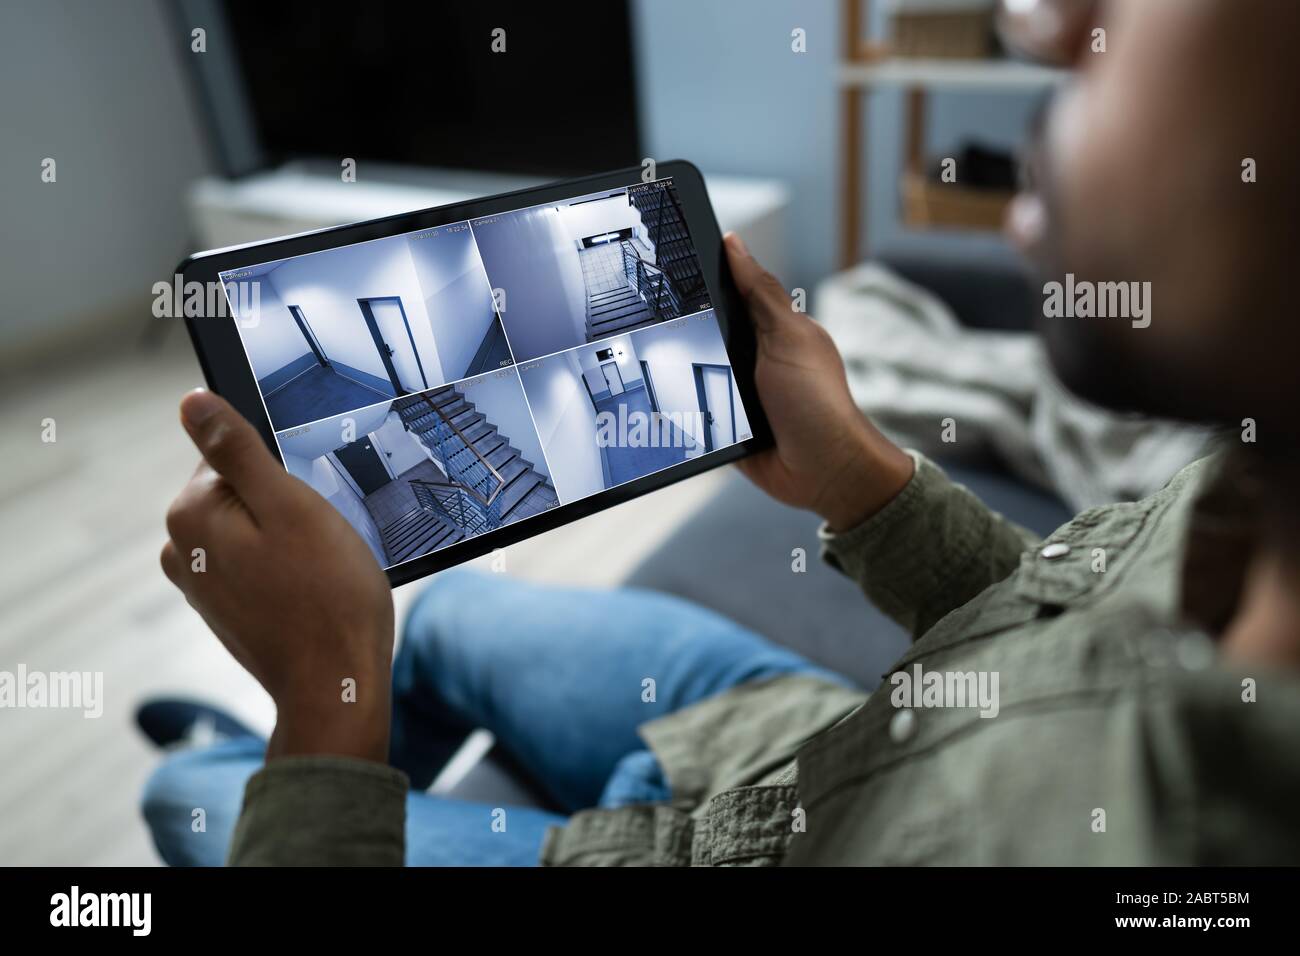 Persona le telecamere di monitoraggio Live View di casa sulla tavoletta digitale Foto Stock